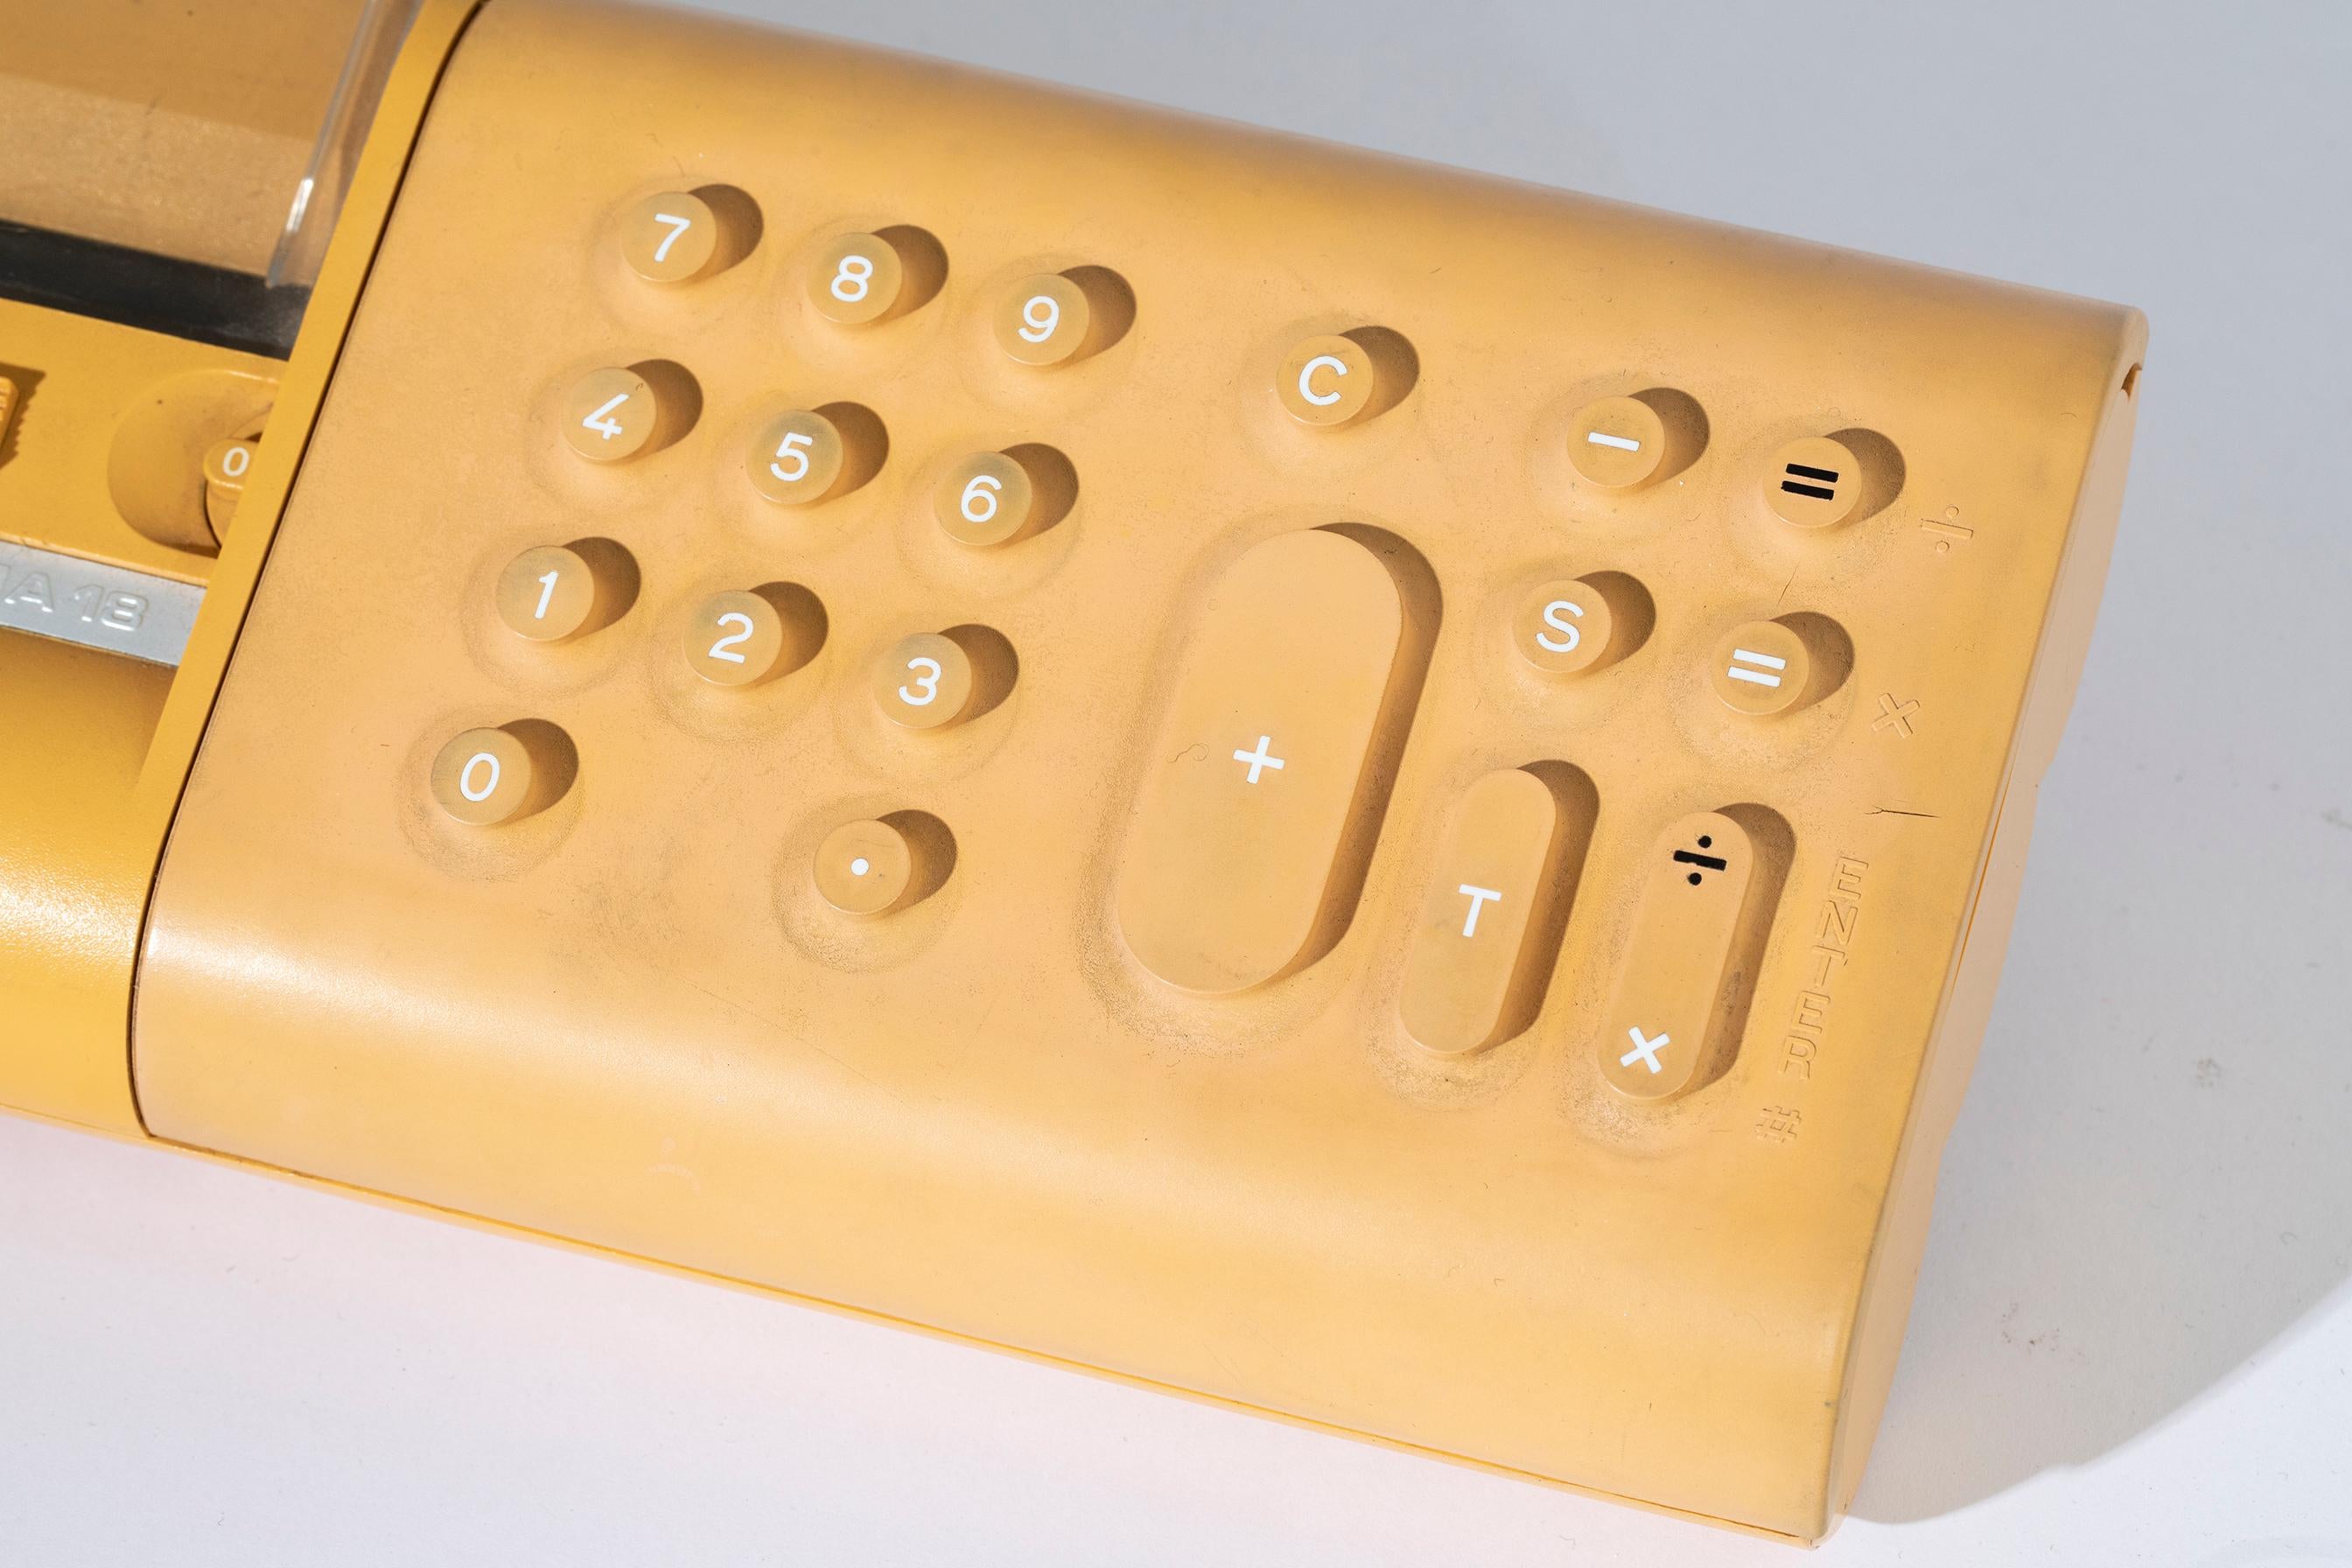 Der Divisumma 18 ist ein tragbarer elektronischer Taschenrechner von Olivetti aus dem Jahr 1973, mit dem das Unternehmen in den Markt für tragbare Elektronik einstieg. 
Dank des Entwurfs von Mario Bellini, der mit Dario De Diana, Alessandro De